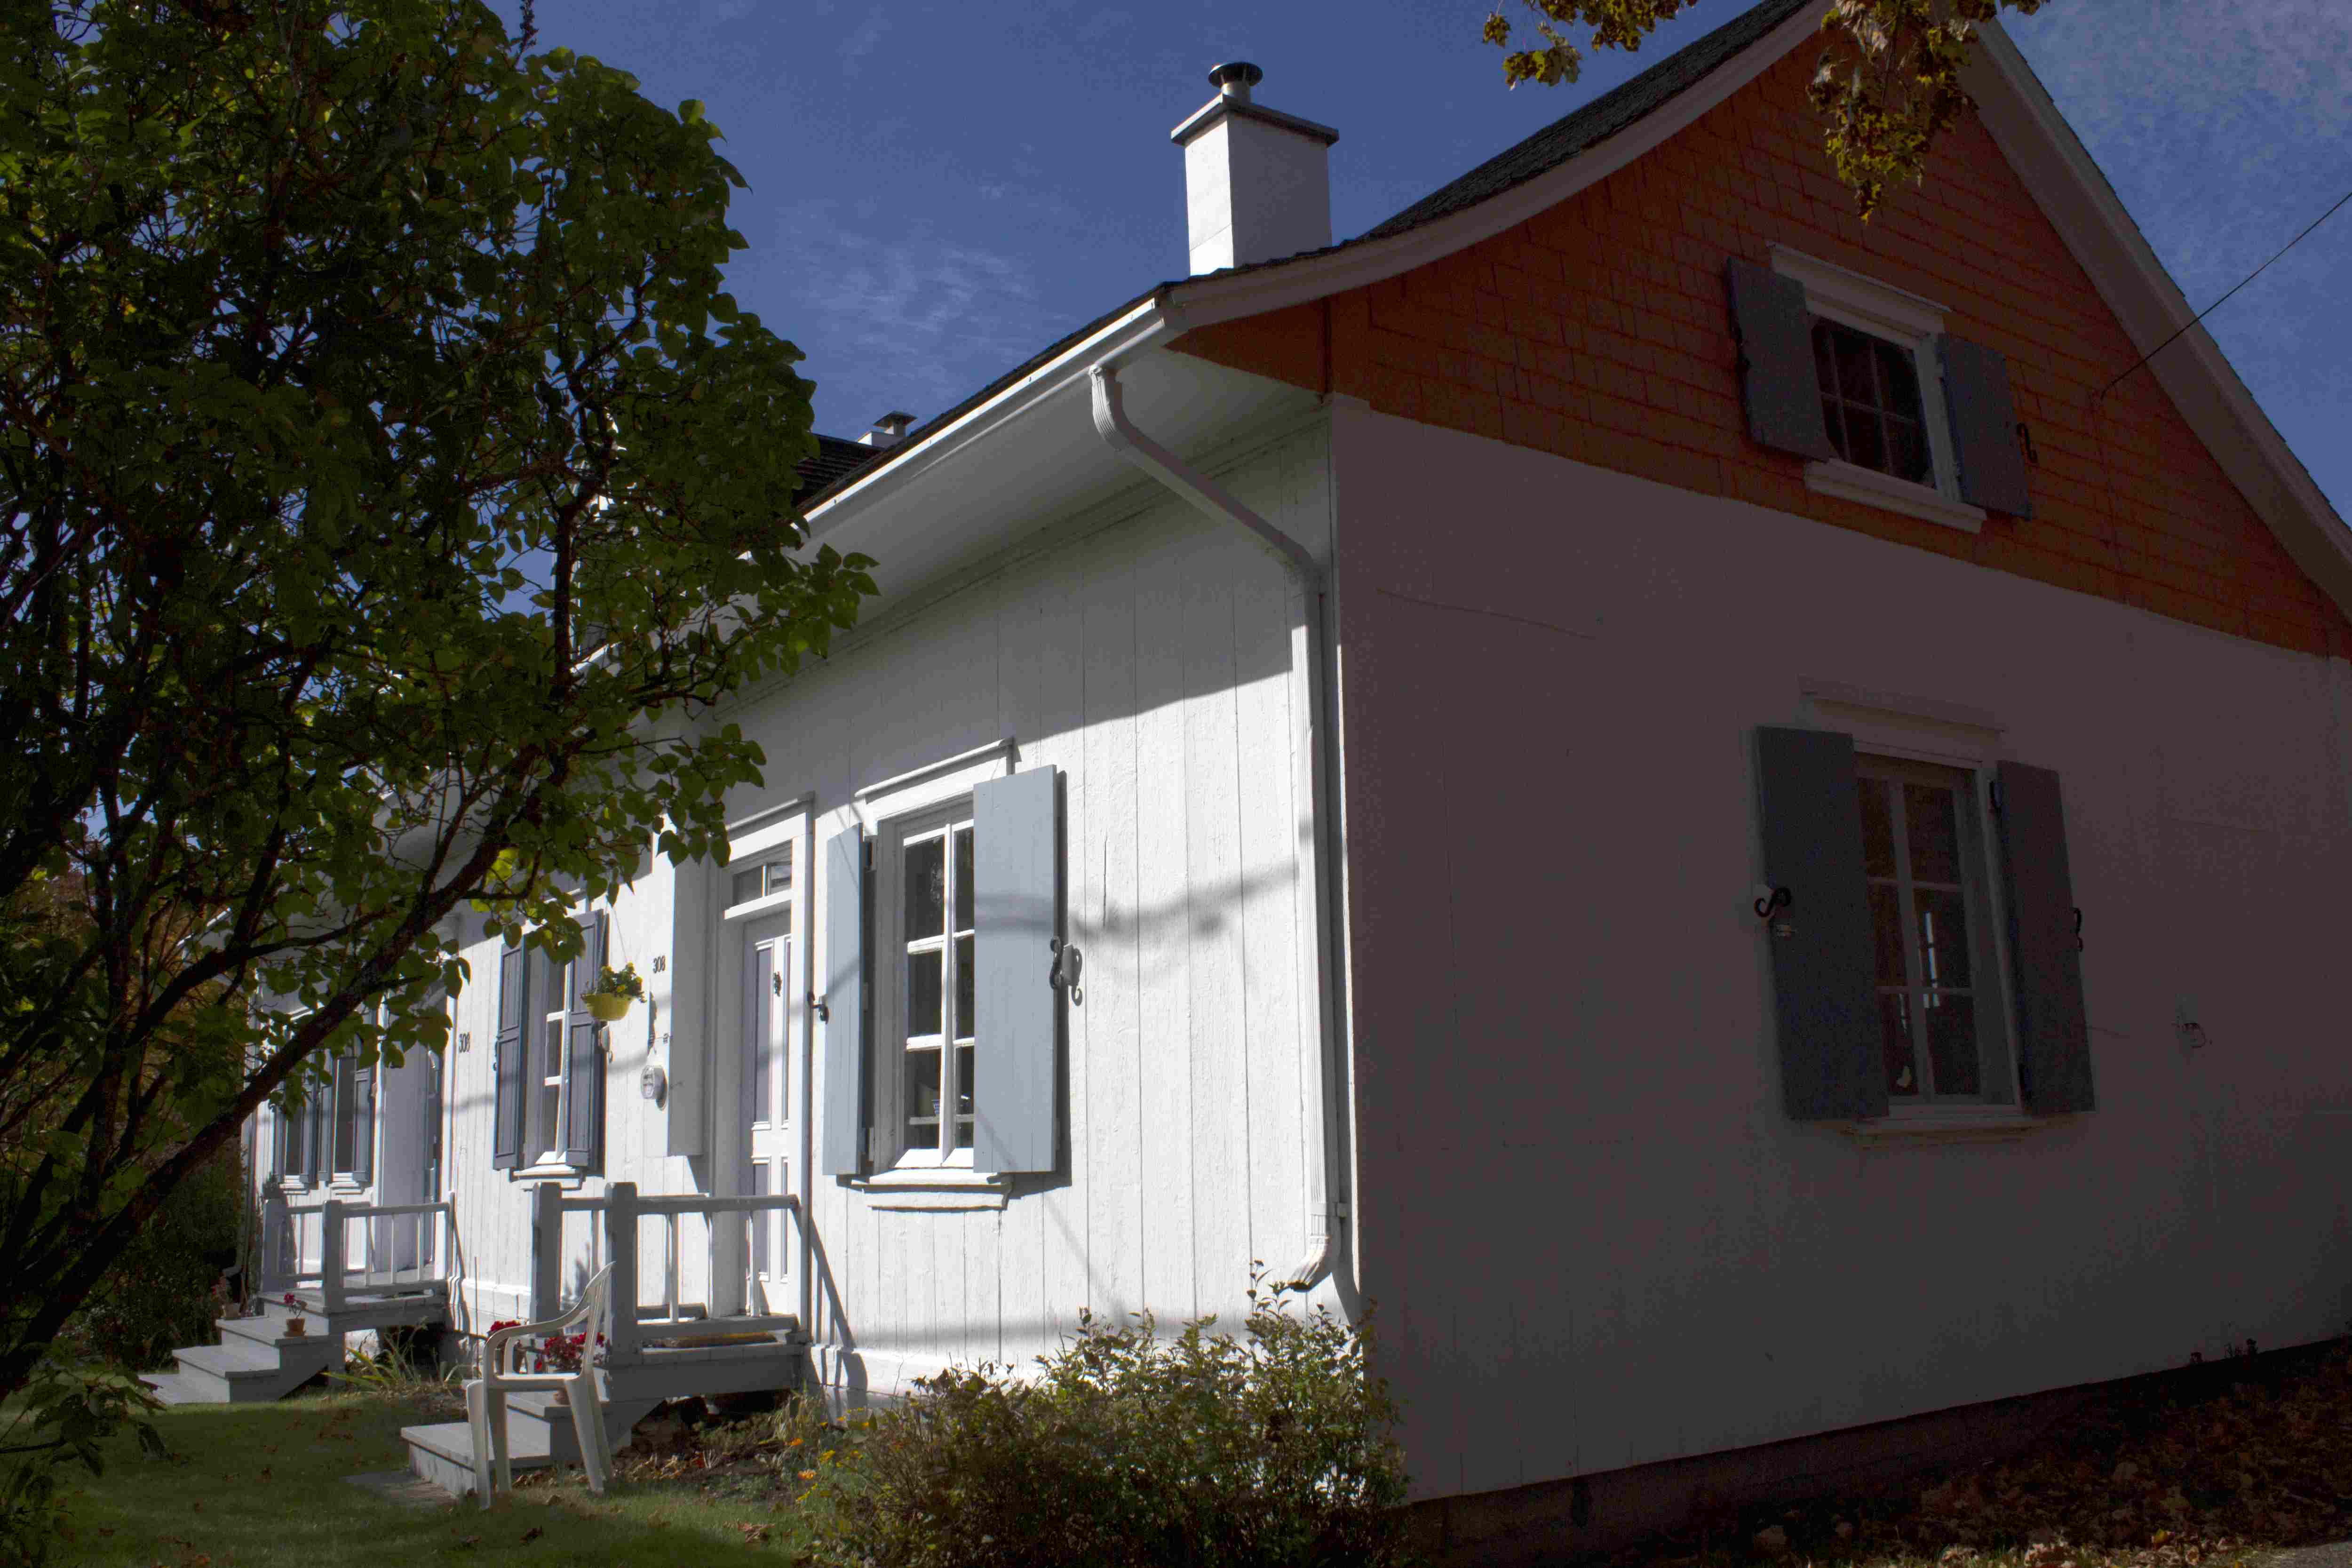 Photographie en couleurs d’une maison ancienne blanche aux volets bleu pâle, entourée de verdure.